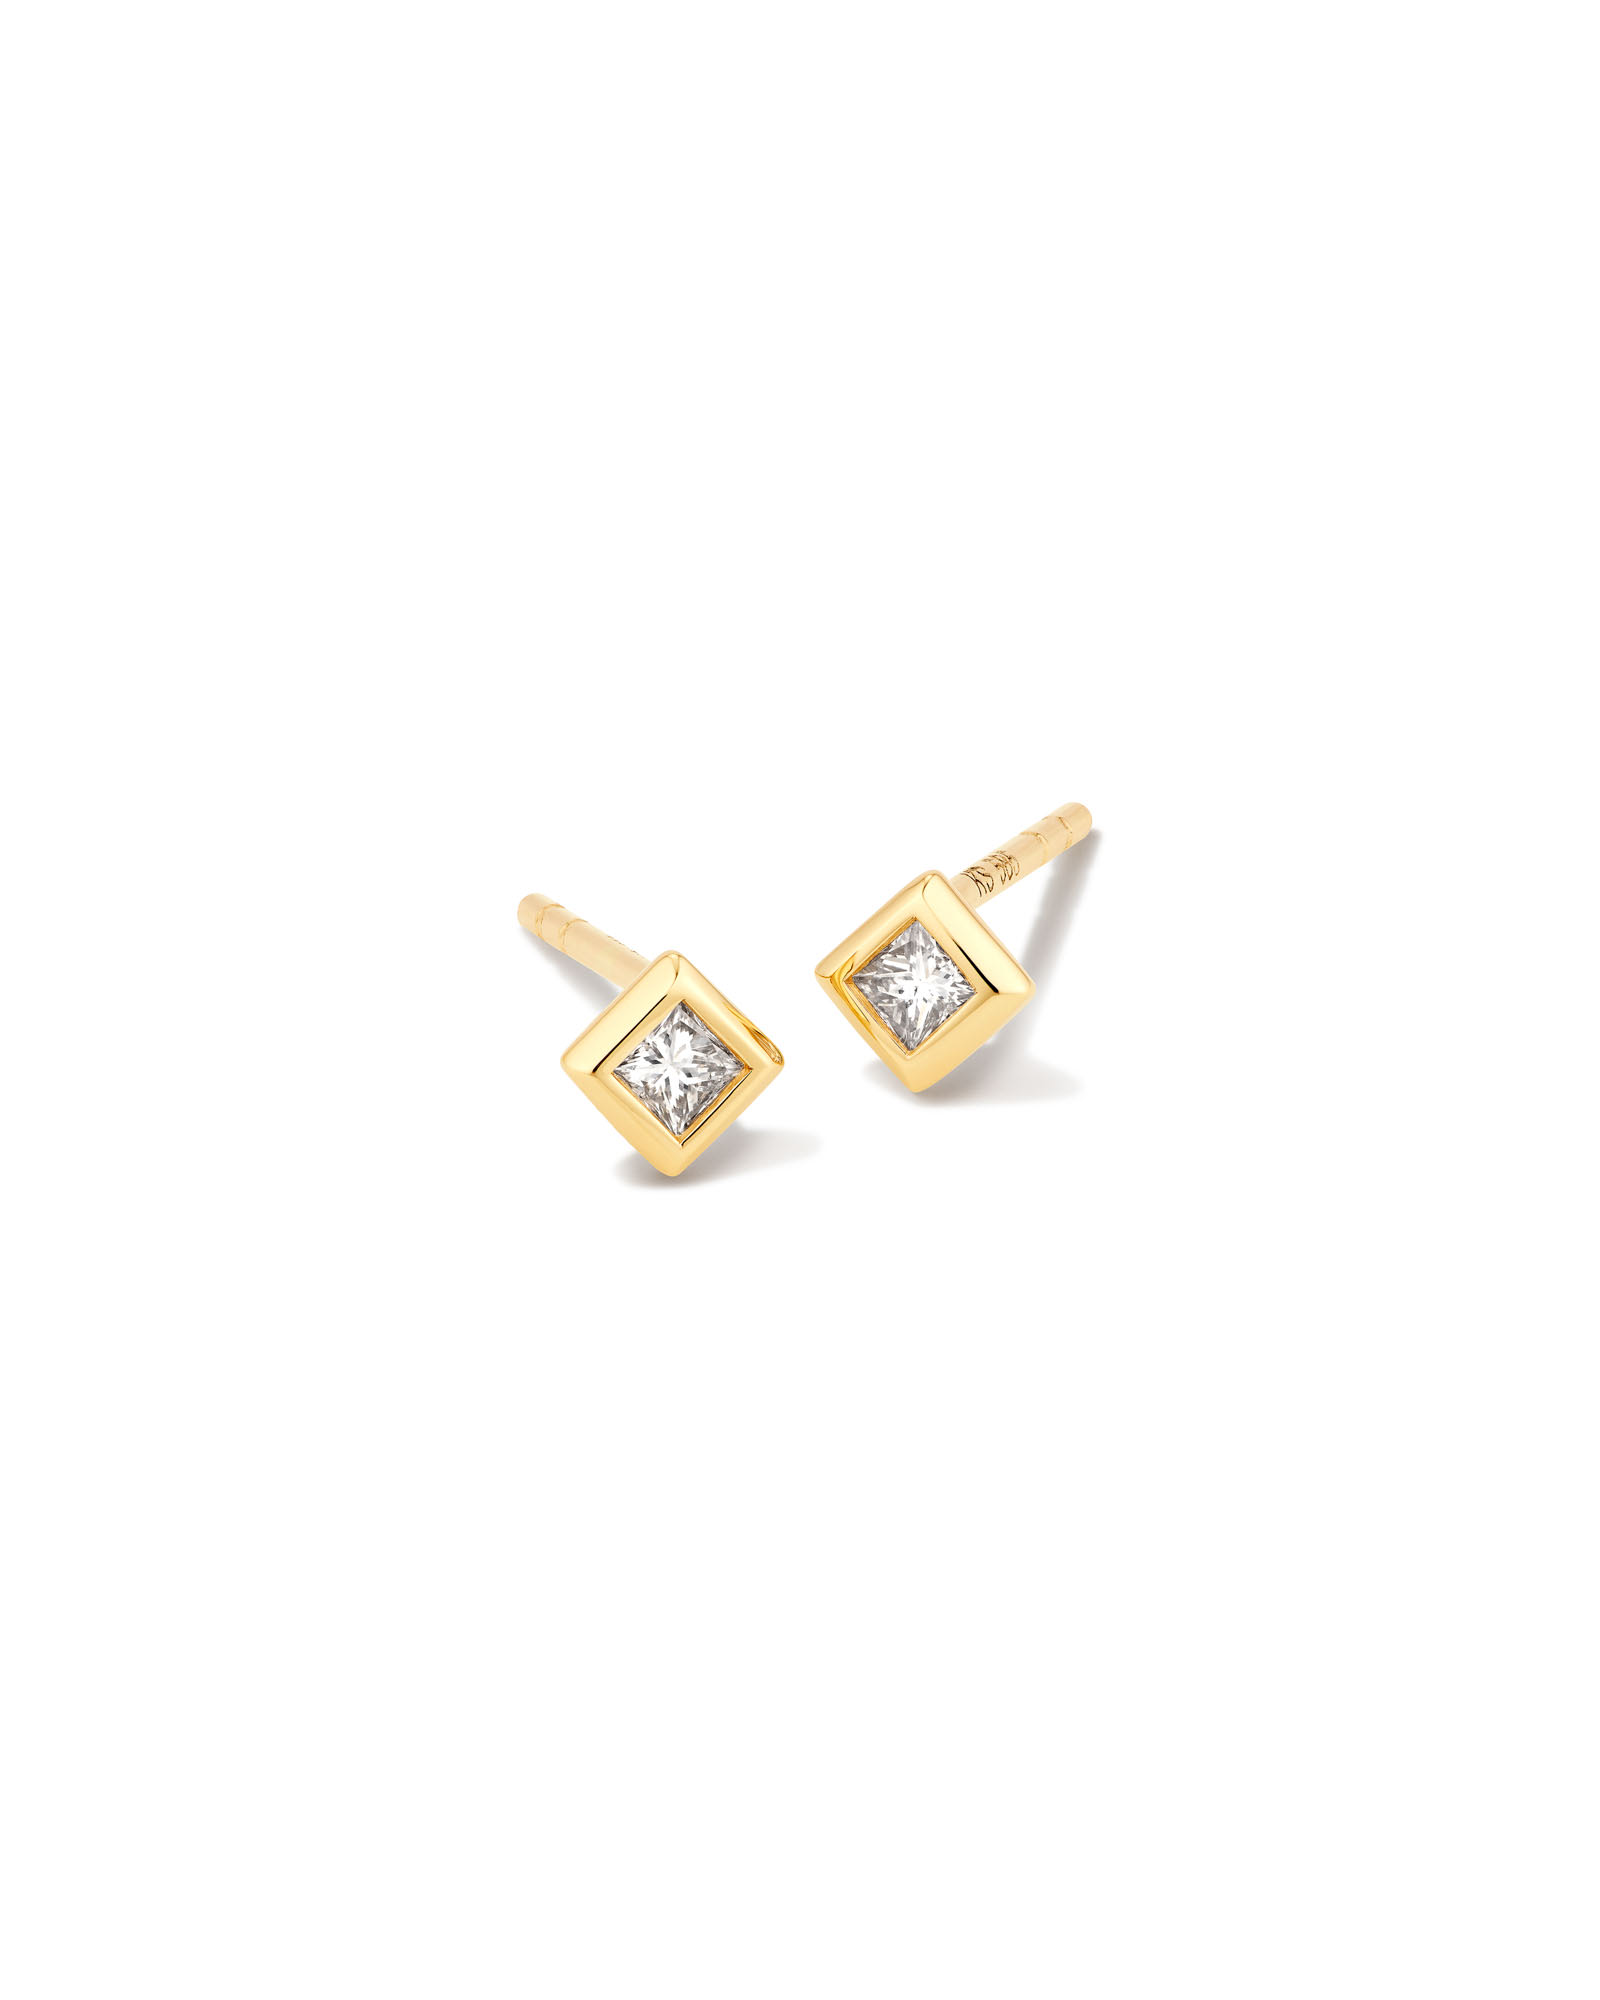 Kendra Scott Michelle 14k Yellow Gold Stud Earrings in White Diamond | Diamonds/Metal